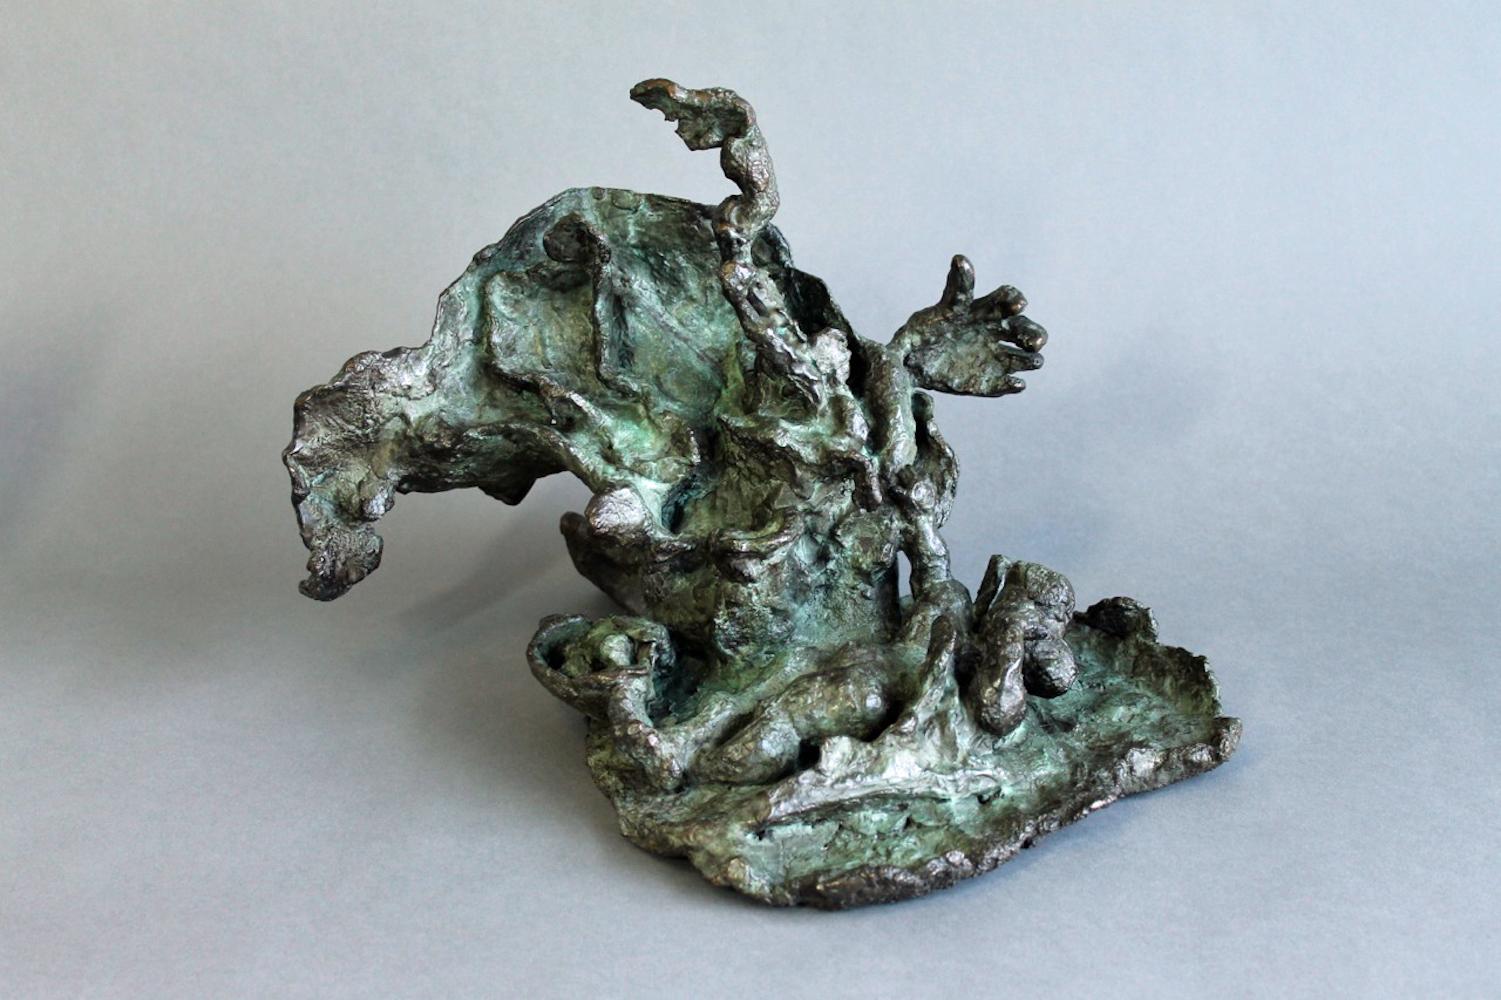 Sculpture en bronze organique et abstraite de Yulla Lipchitz représentant une femme allongée. 

À propos de l'artiste : Yulla Lipchitz, née Halberstadt, est née le 21 avril 1911 à Berlin, en Allemagne. Alors qu'elle grandit dans une famille juive